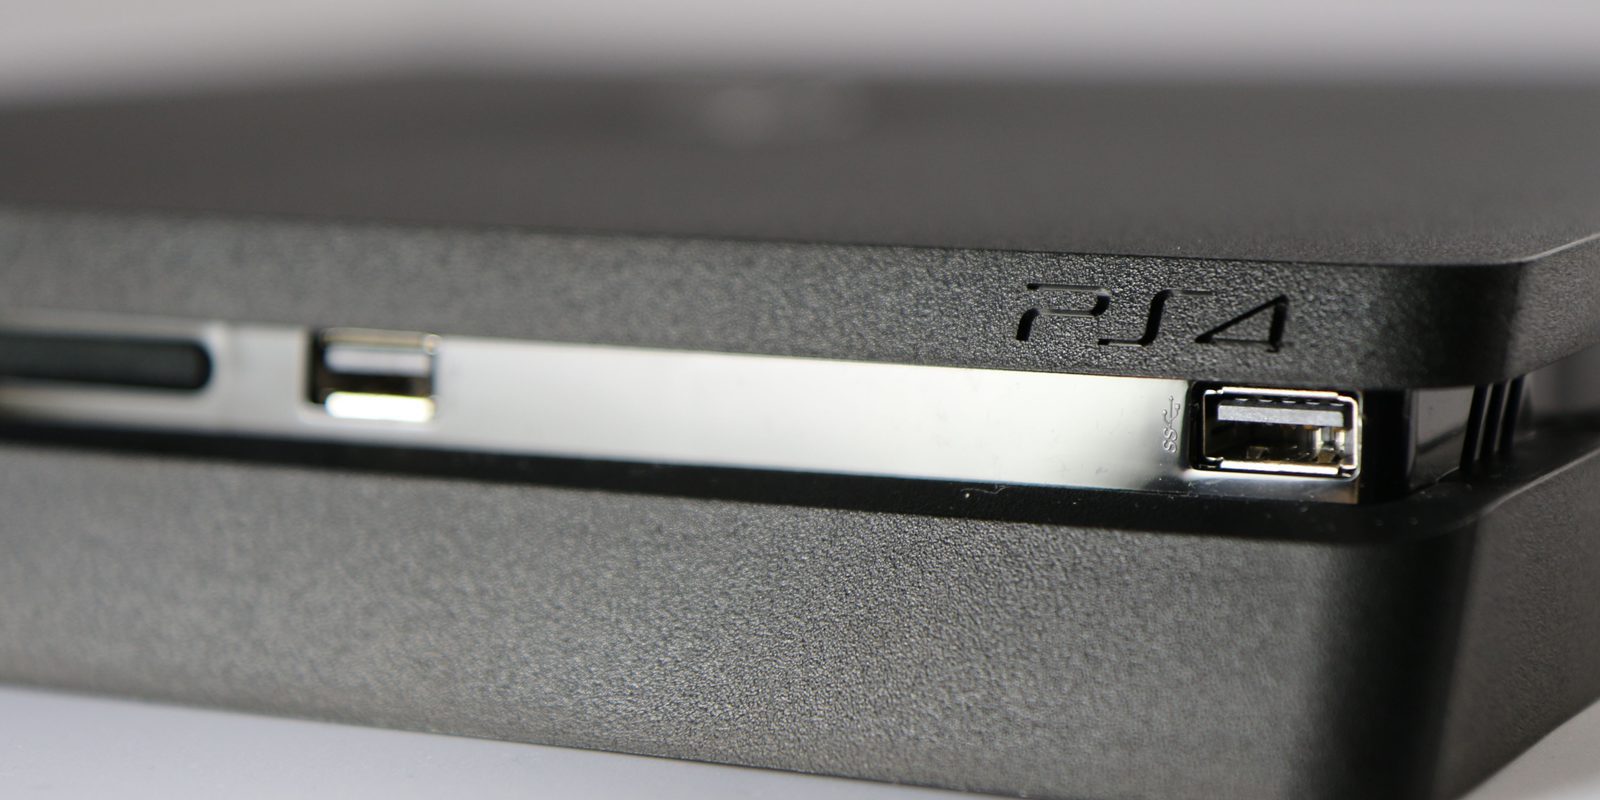 PS4 Slim sería compatible con los router WiFi de 5GHz